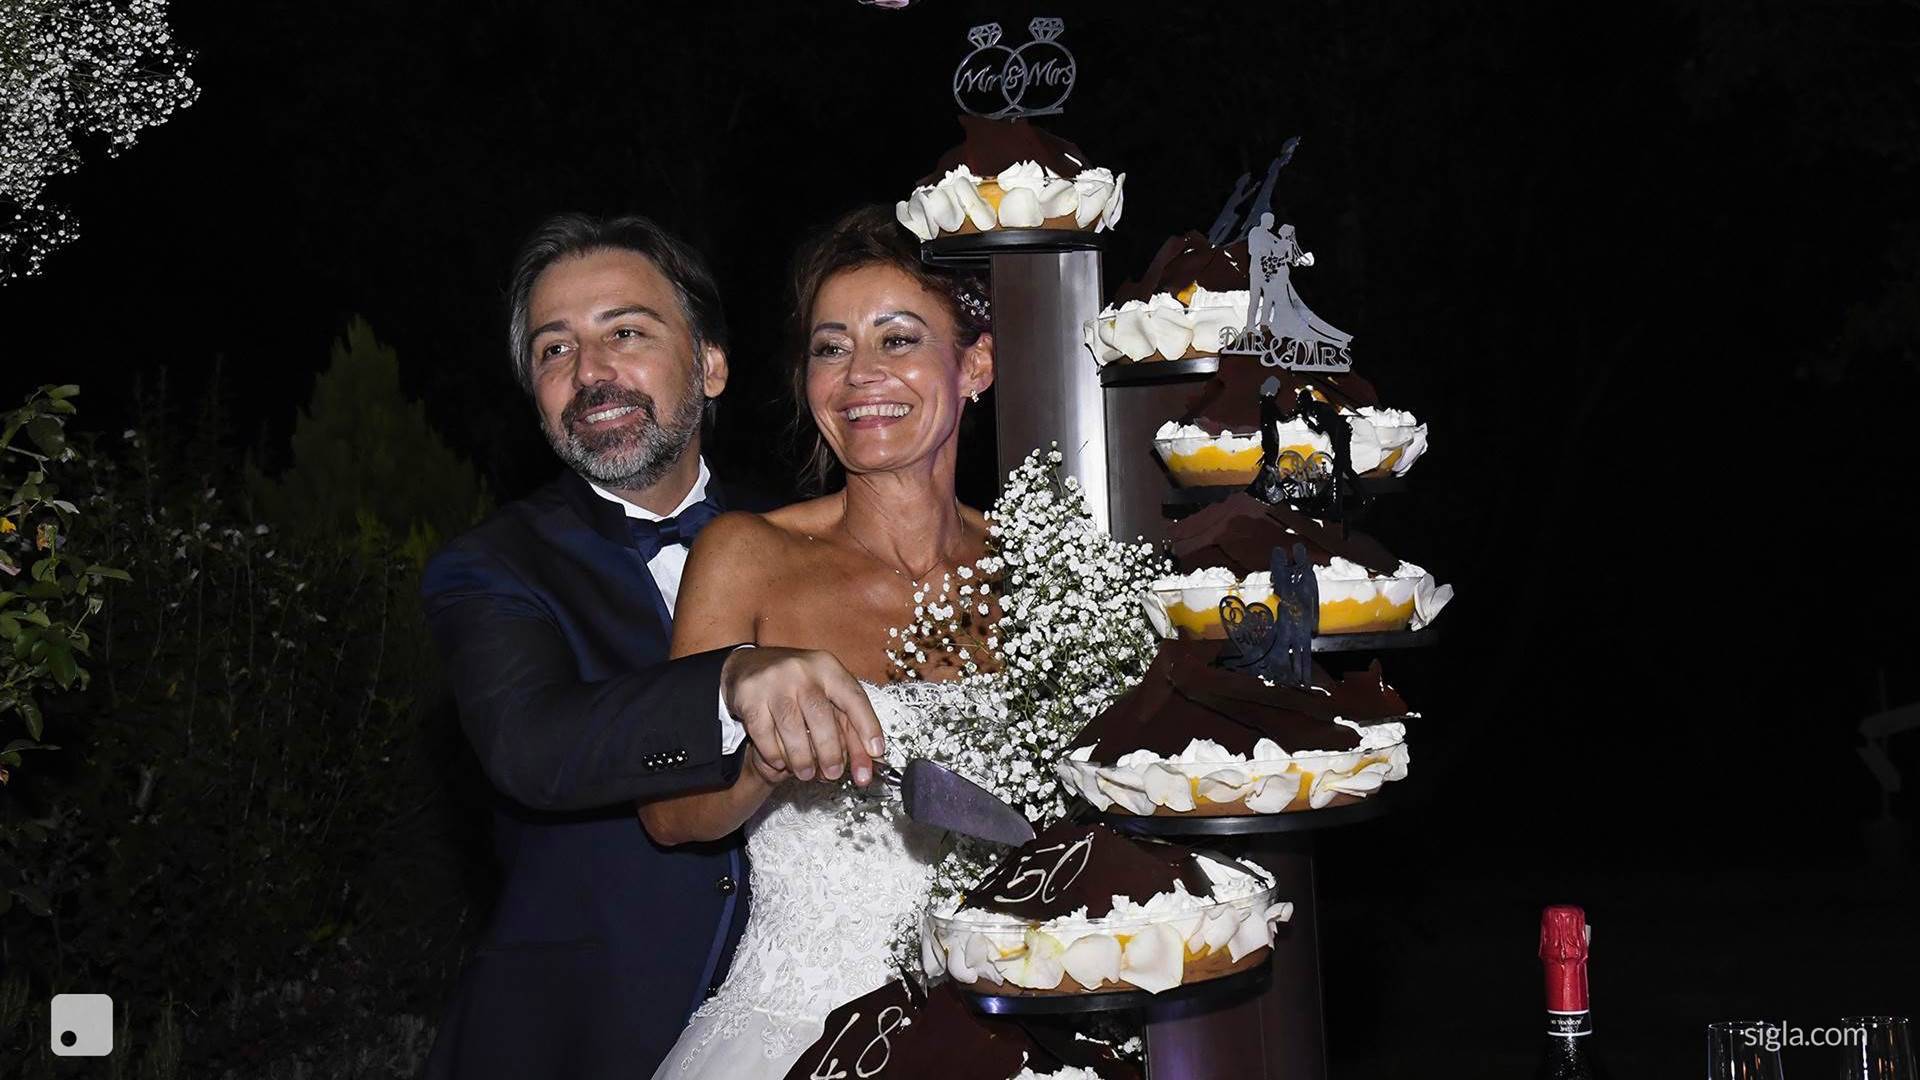 Stefano & Serena wedding26 august 2020